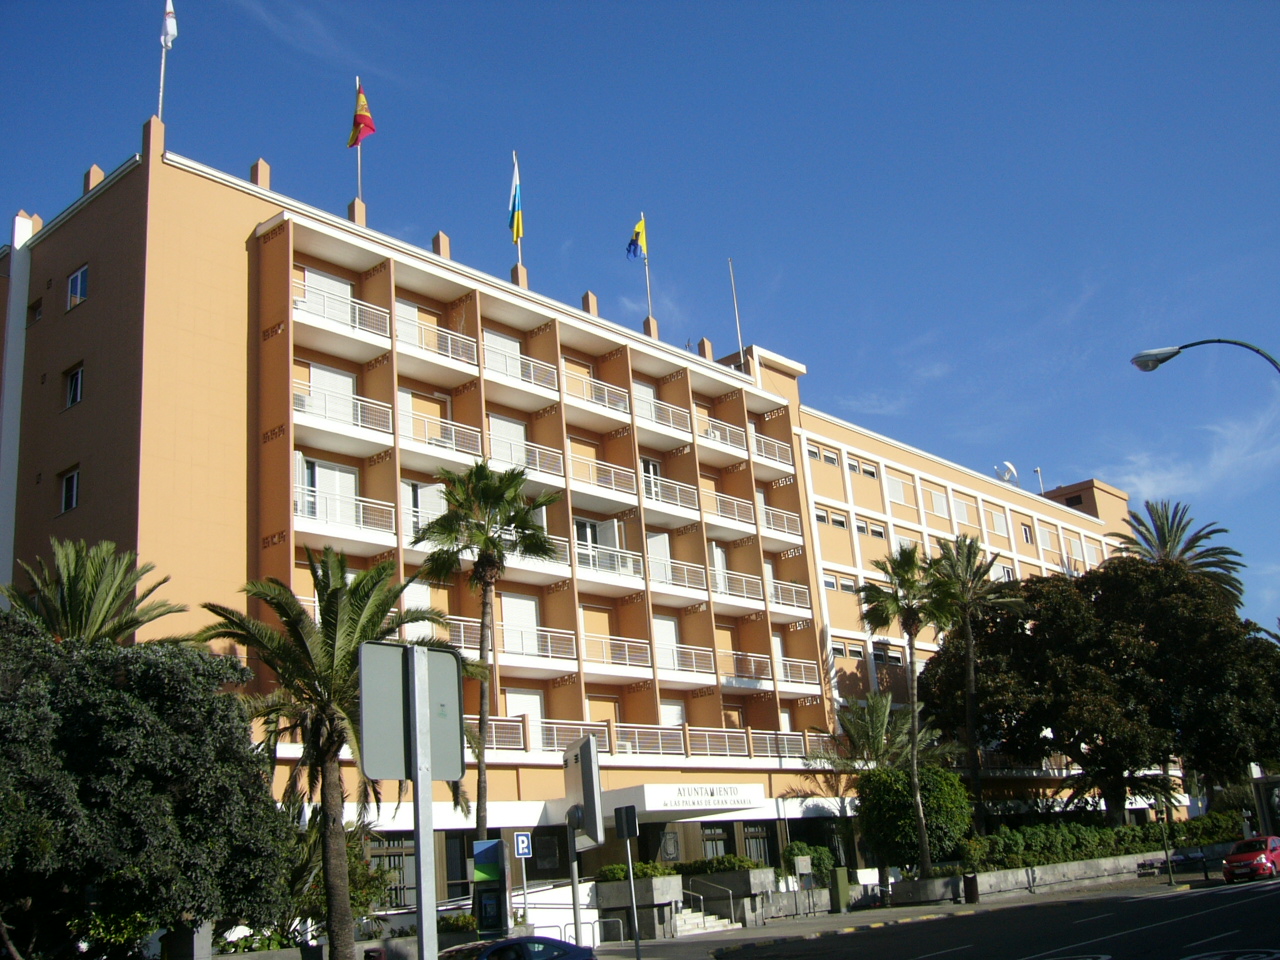 Ayuntamiento de Las Palmas de Gran Canaria / CanariasNoticias.es